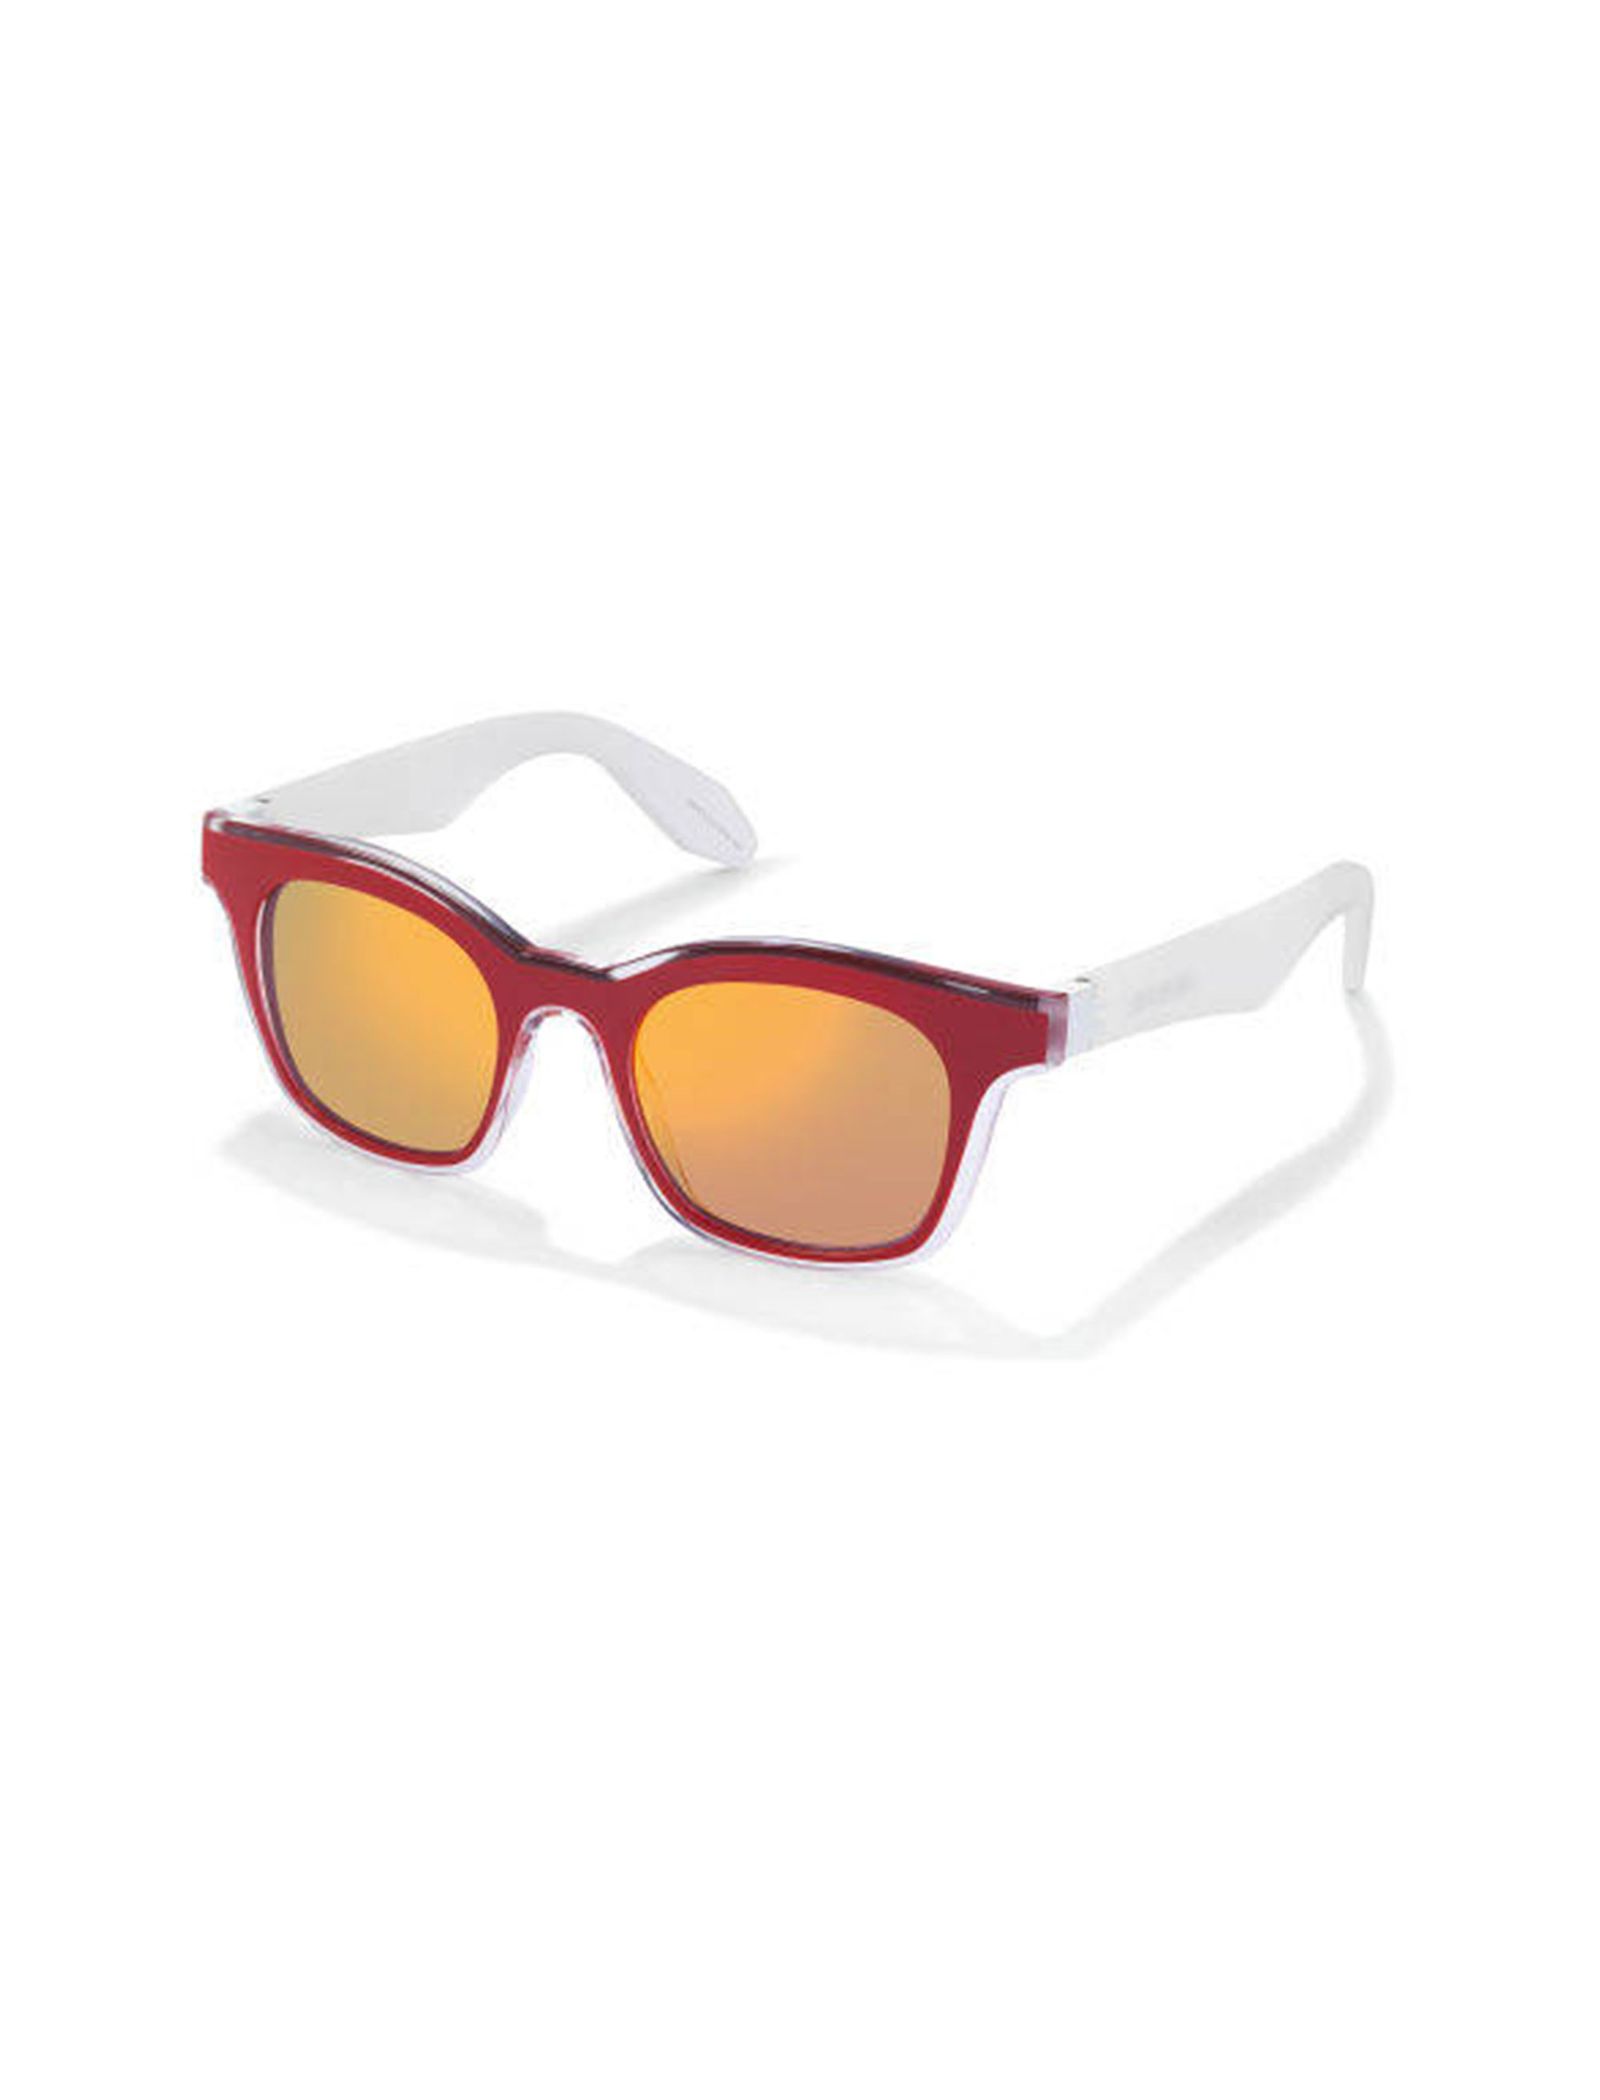 عینک آفتابی ویفرر بزرگسال - سواچ - قرمز و کريستال - 3